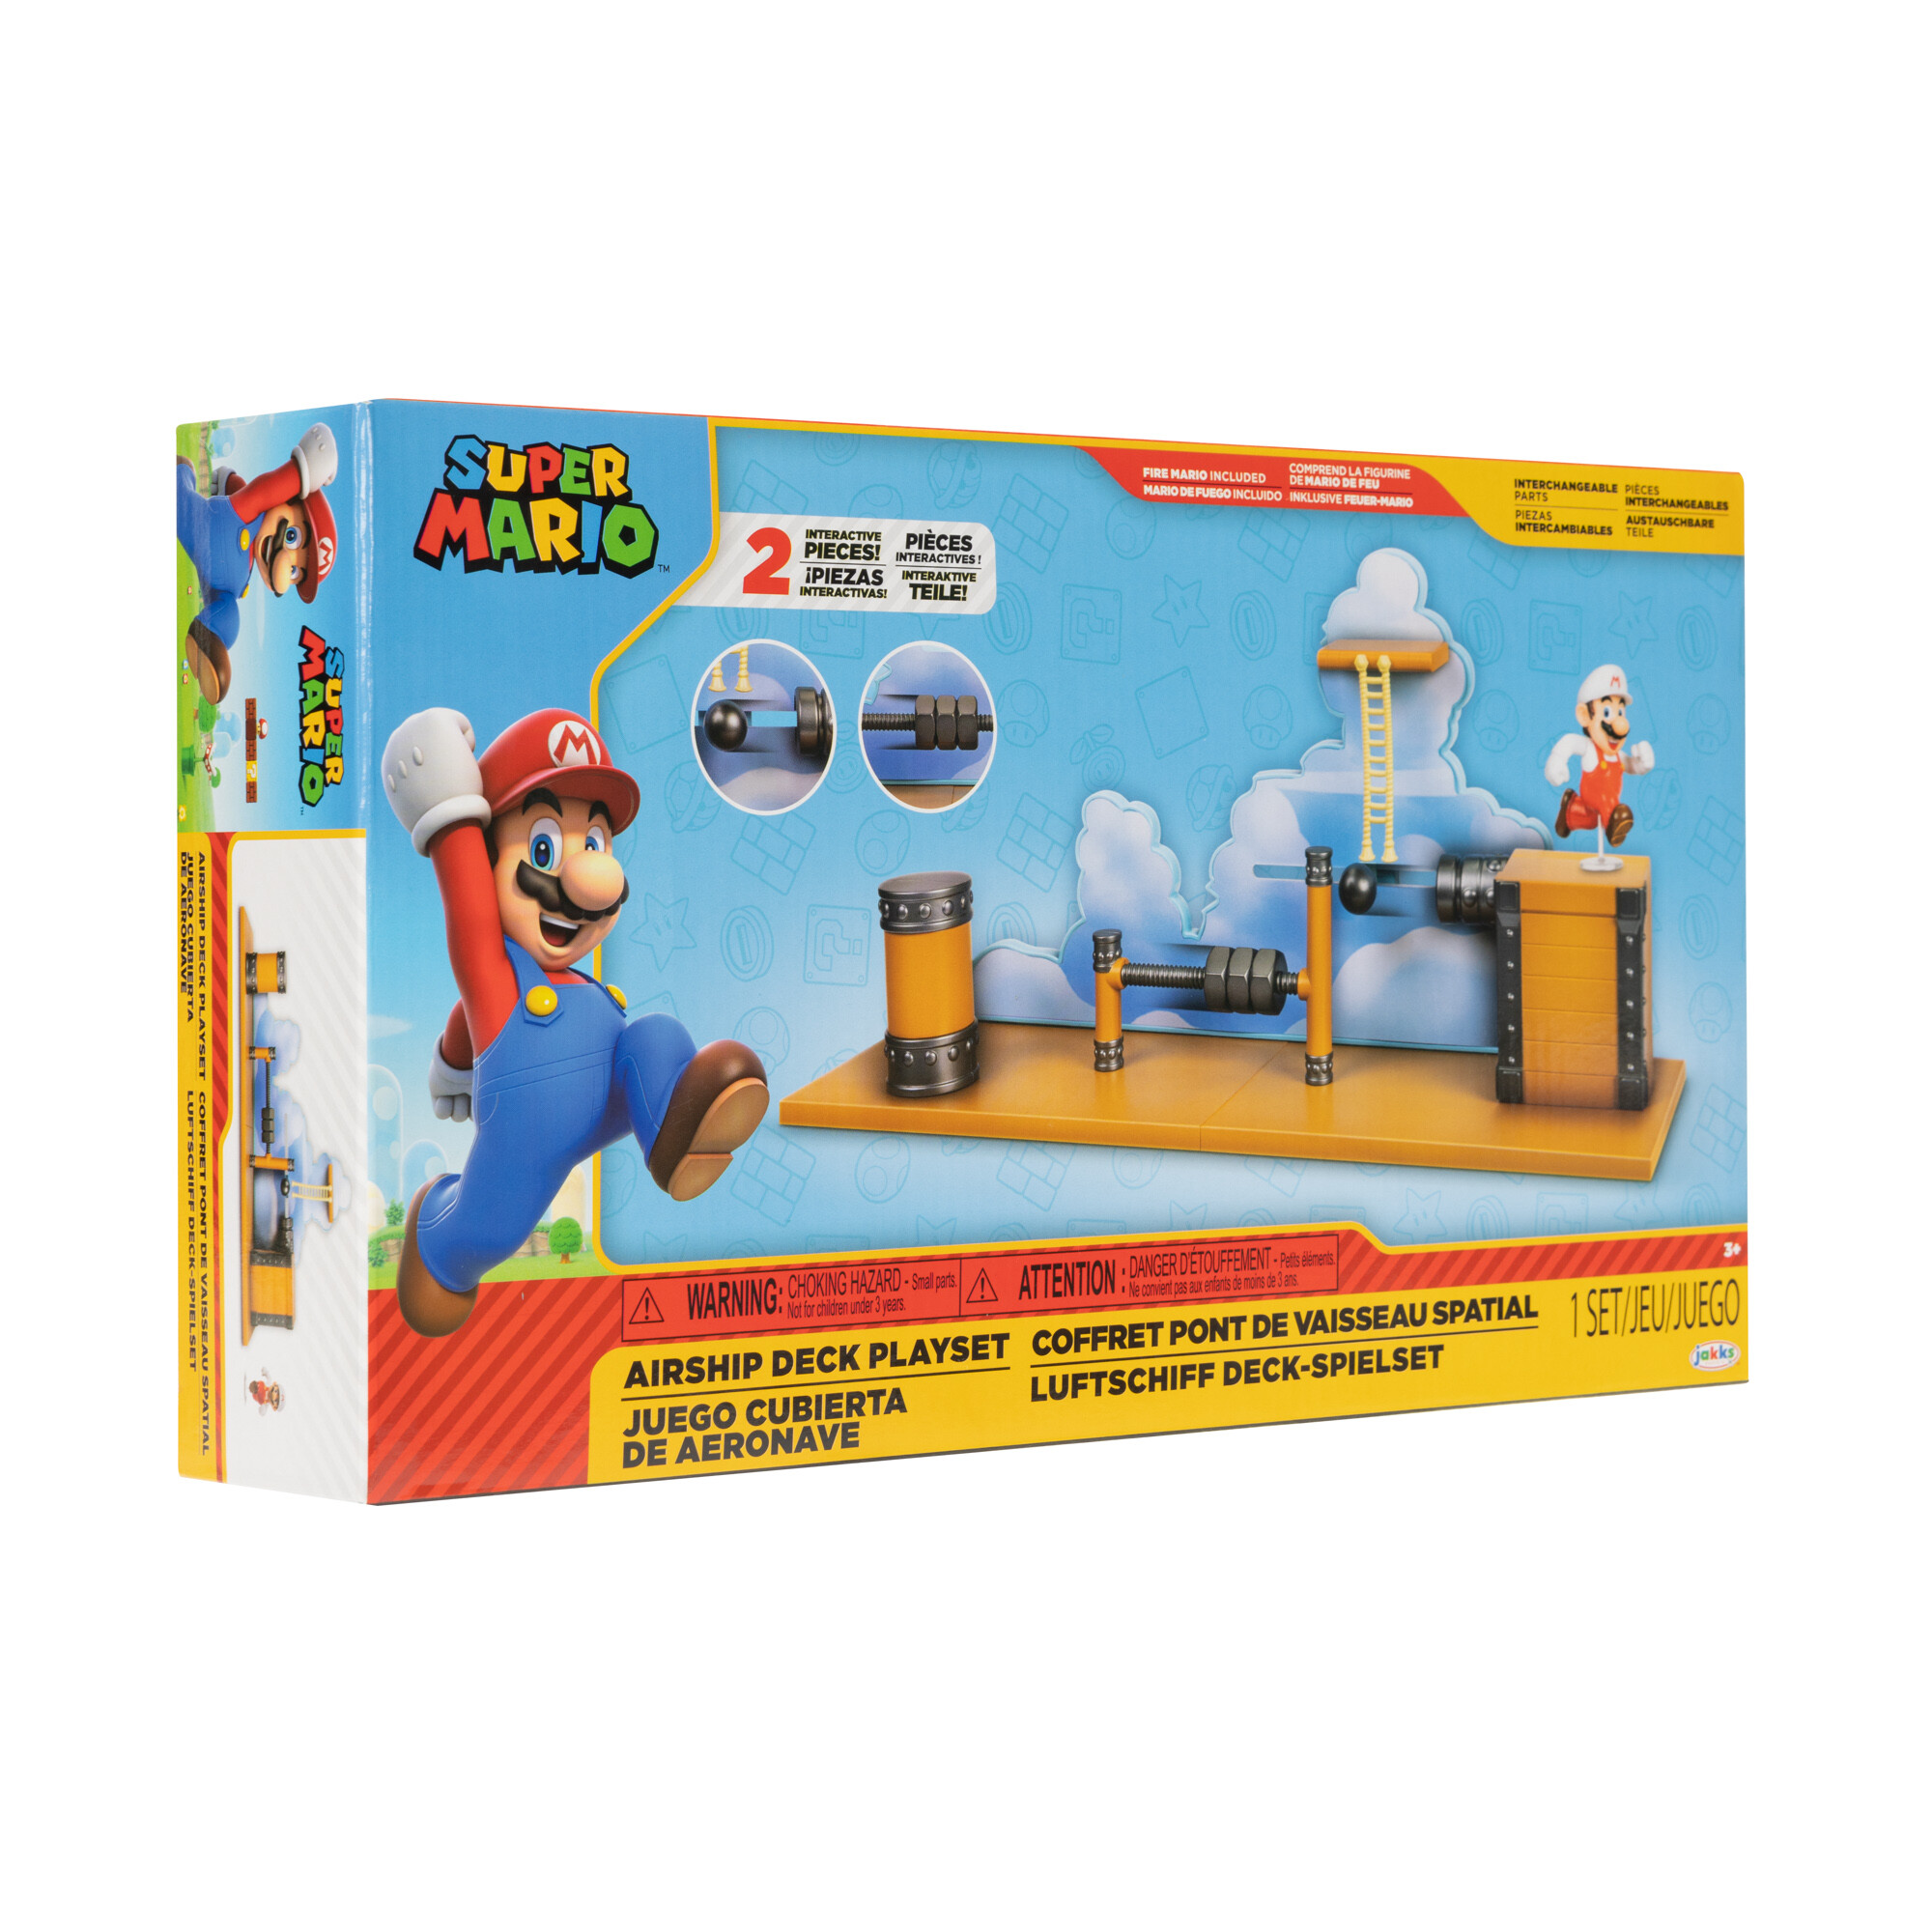 Super mario playset ponte dell'airship di bowser compatibile con gli altri payset nintendo - Super Mario